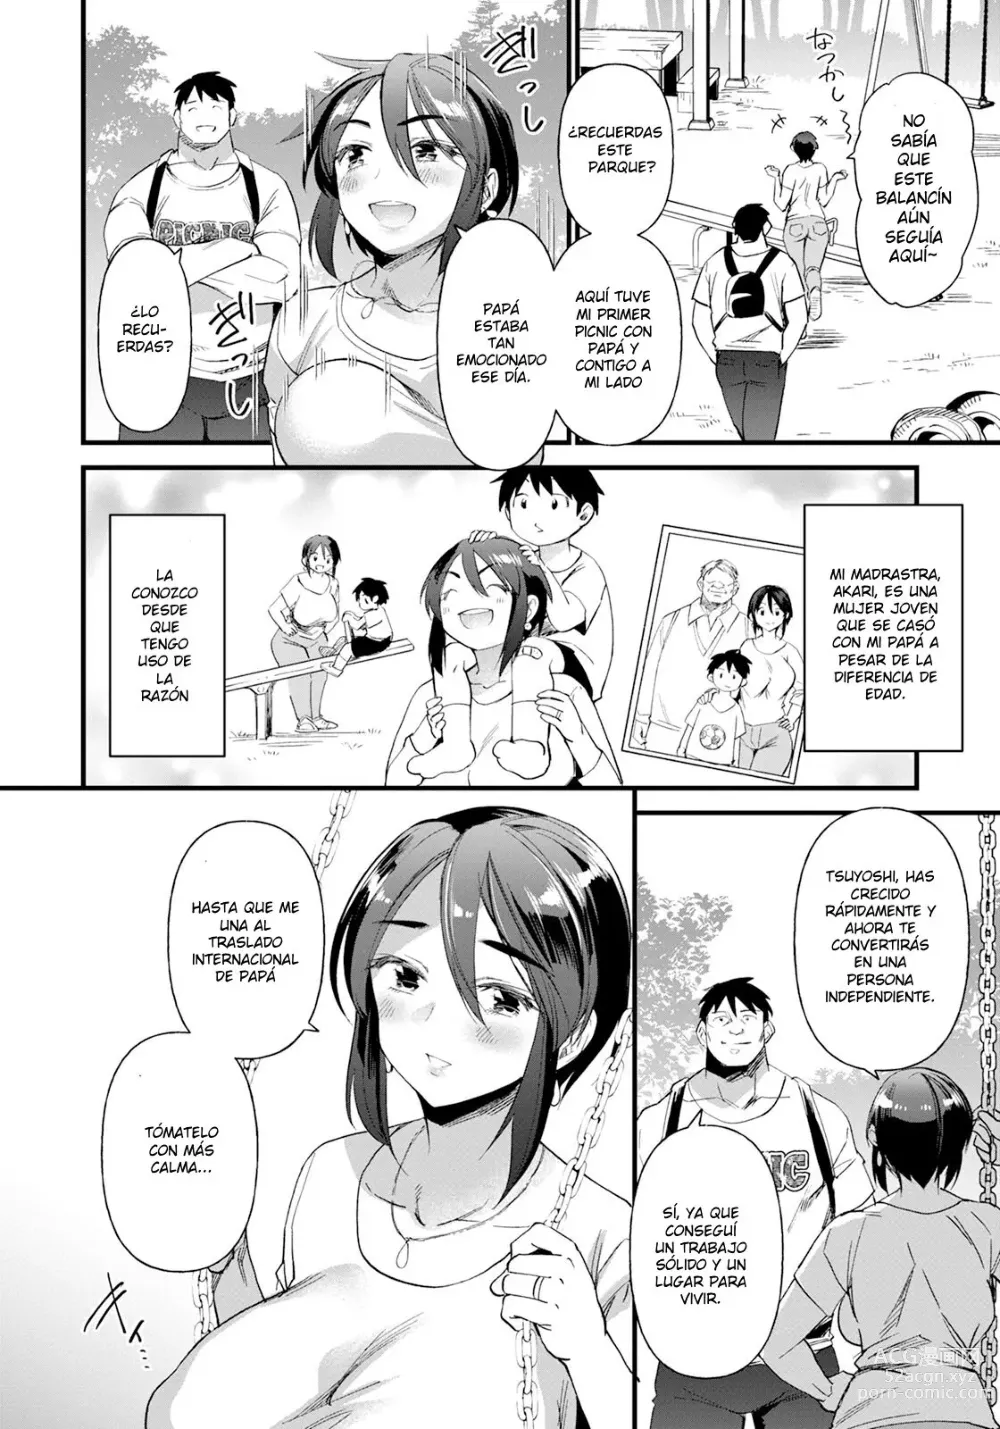 Page 2 of manga divorcio y escalada de montaña